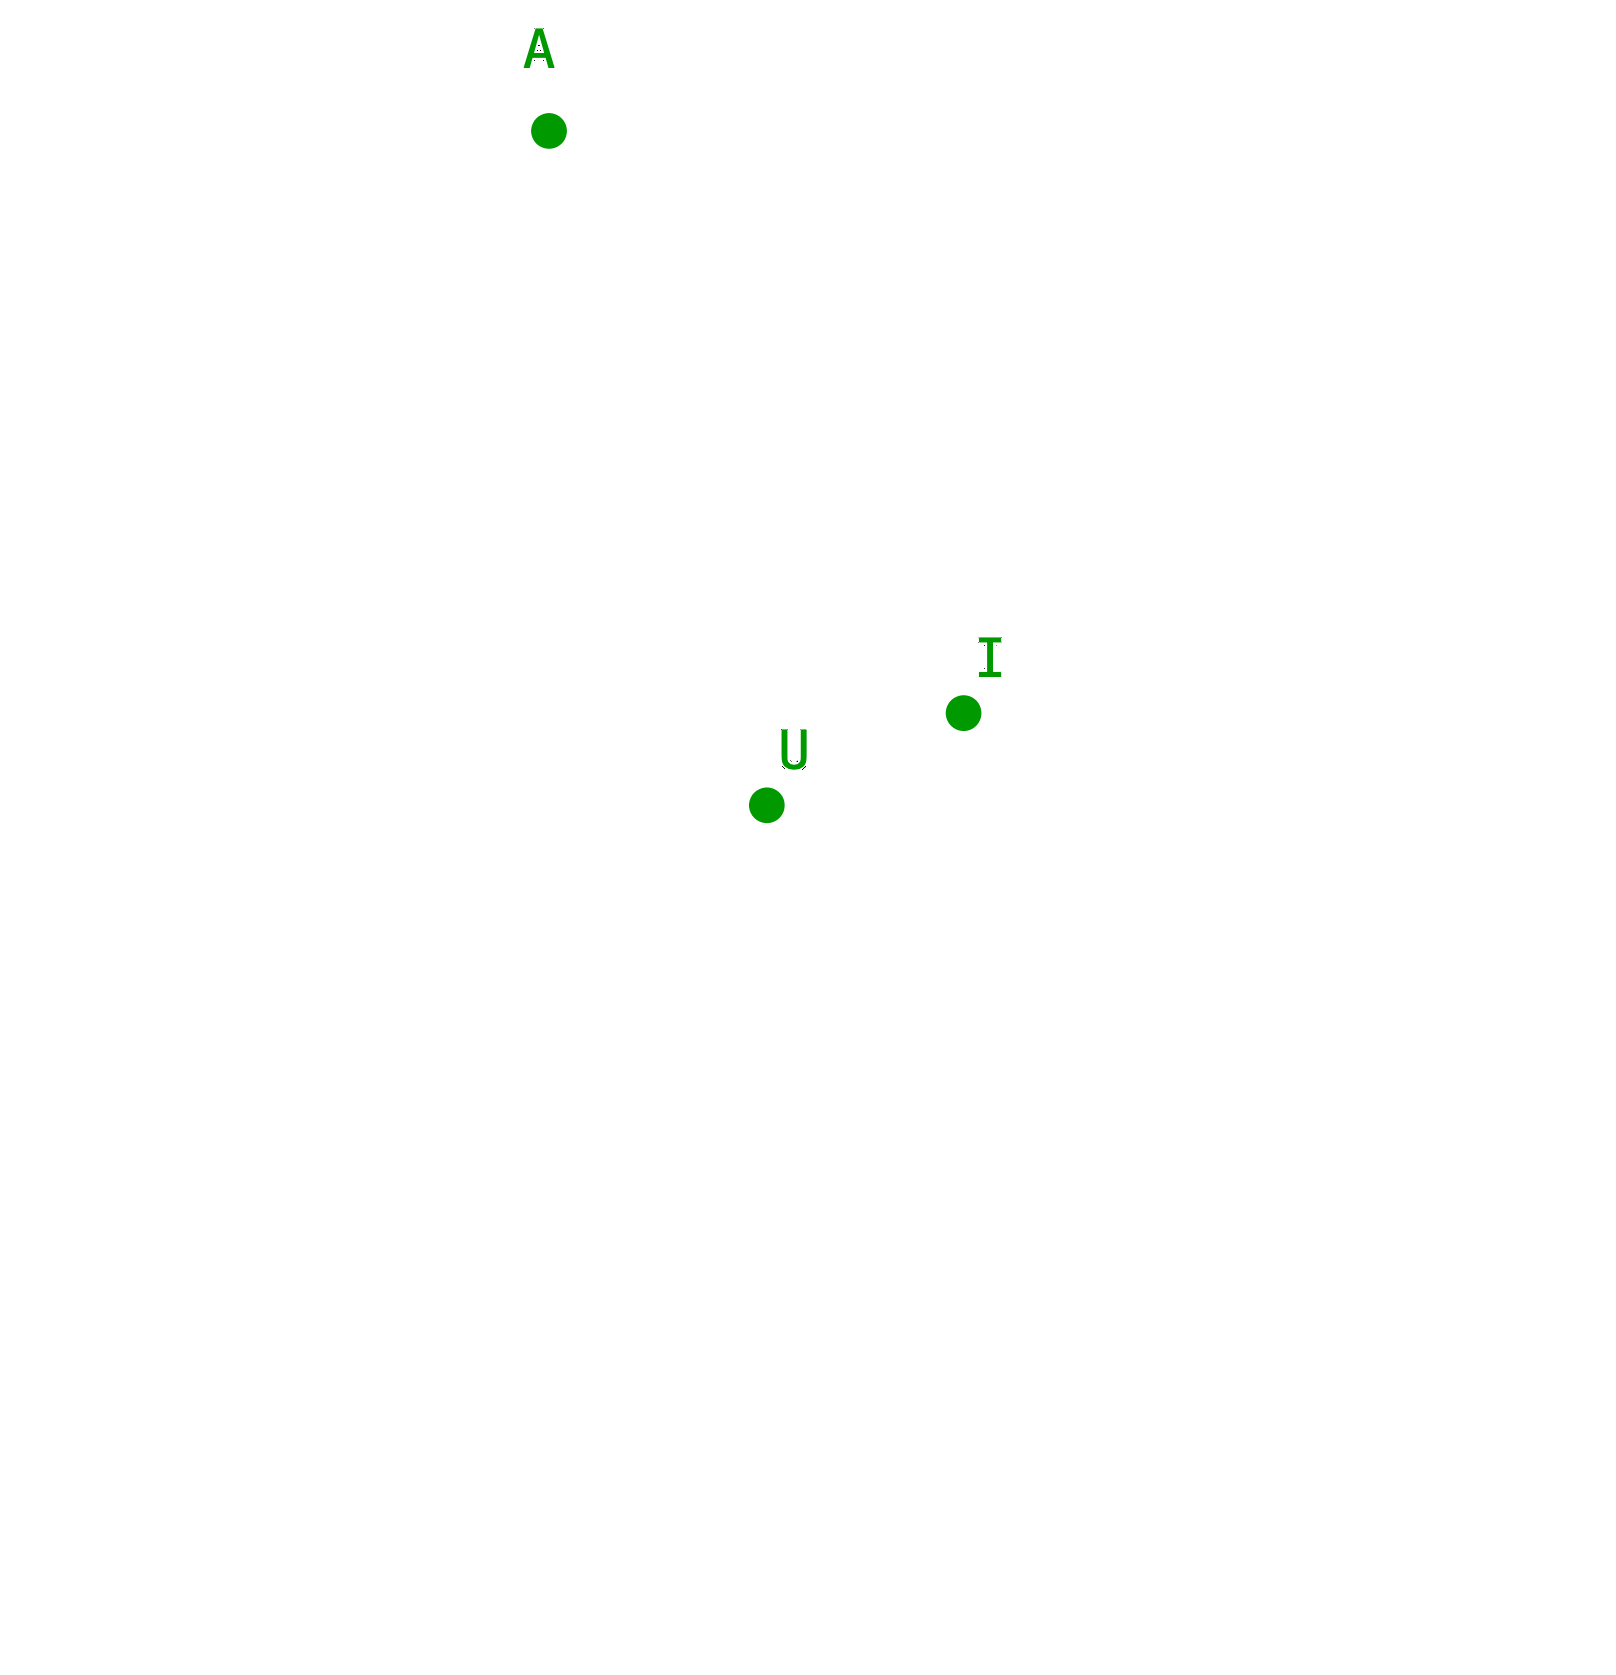 Ein Bild, das Screenshot, Dunkelheit, Schwarz, Grün enthält.

Automatisch generierte Beschreibung